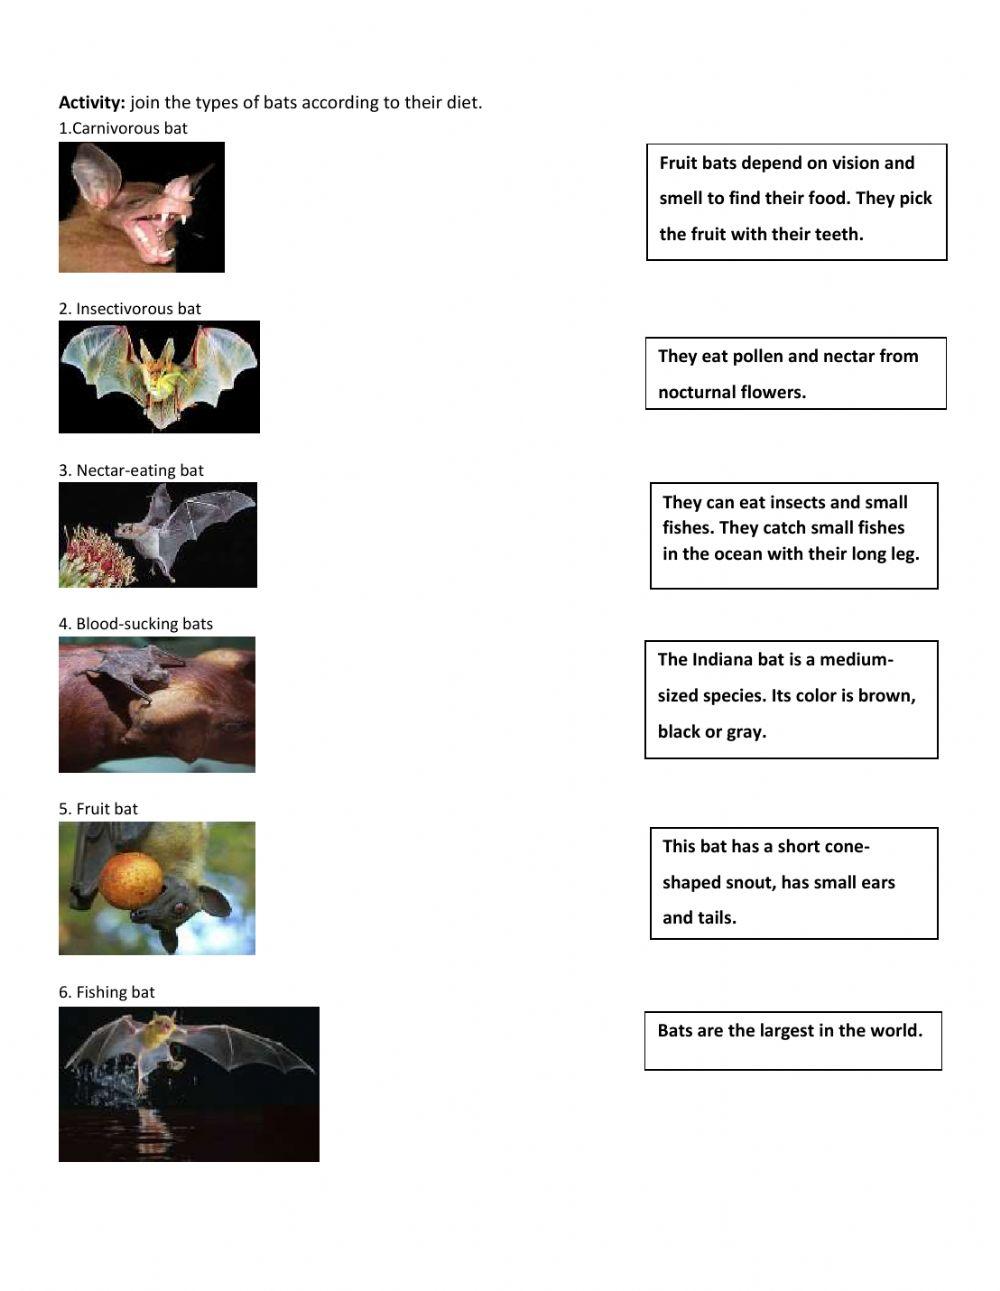 Mammals and bats